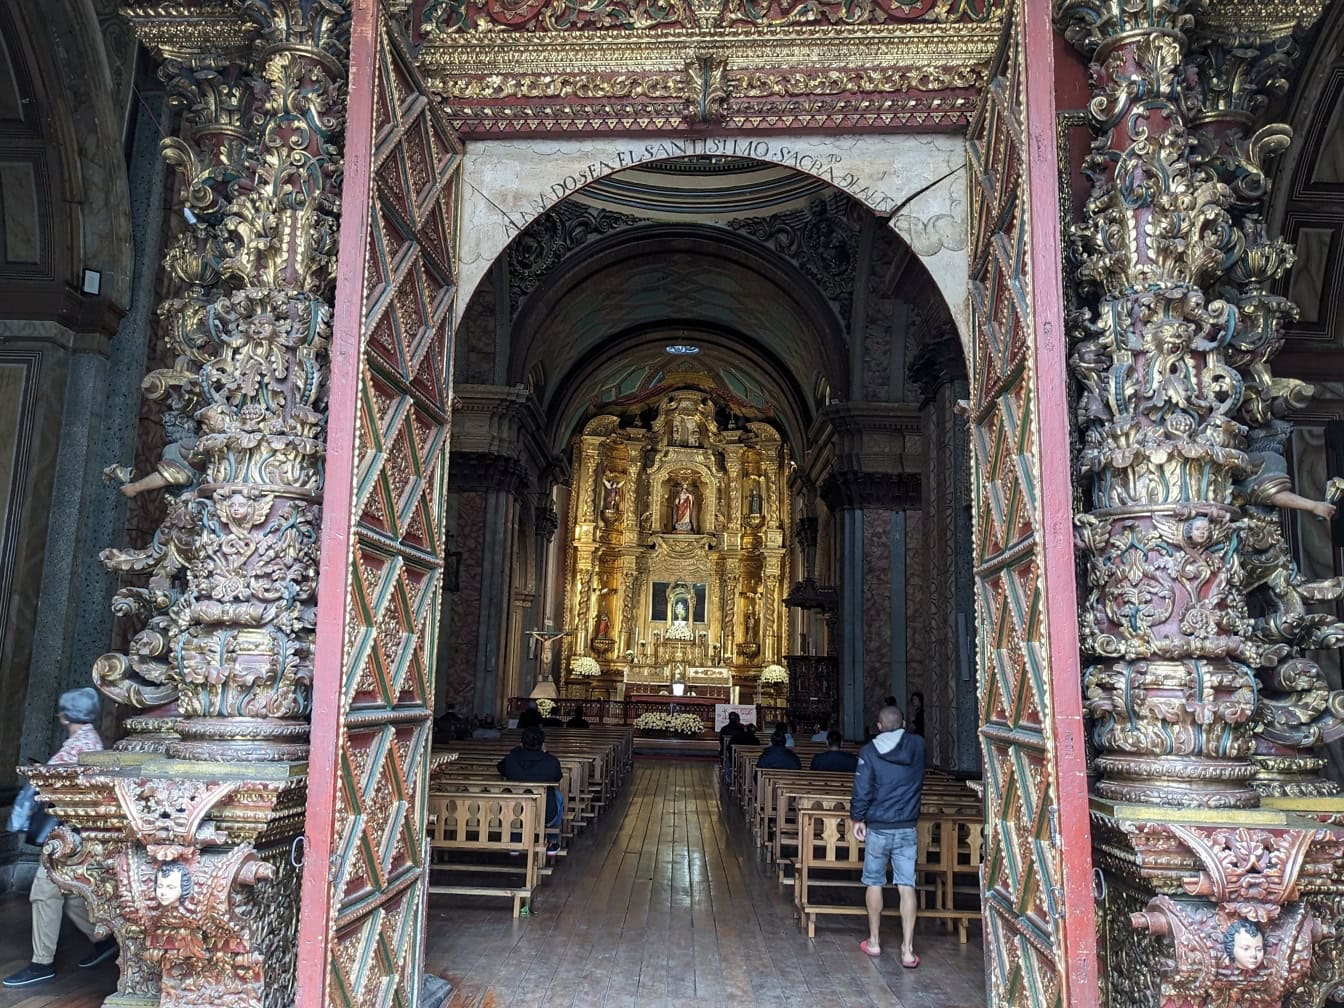 Wejście do kościoła Tabernakulum, renesansowego kościoła katolickiego w mieście Quito w Ekwadorze